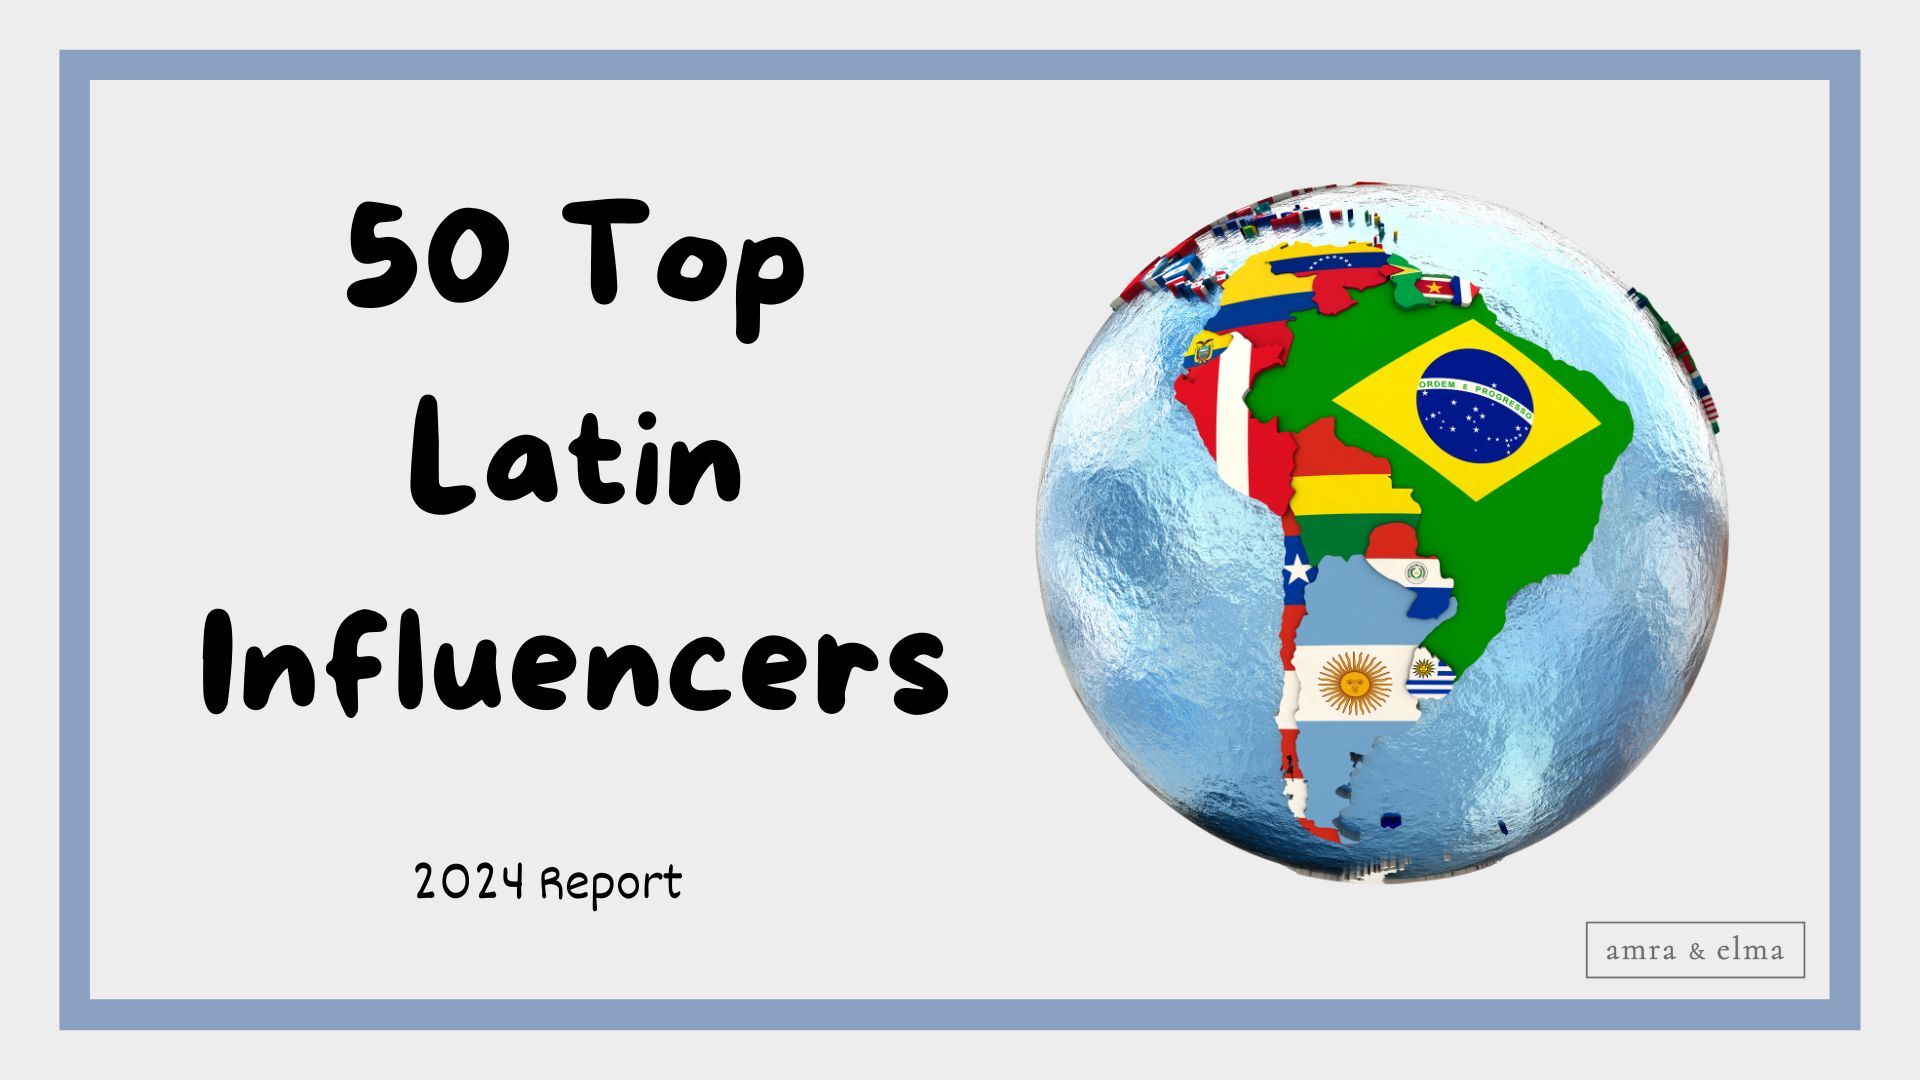 50 Top Latin Influencers